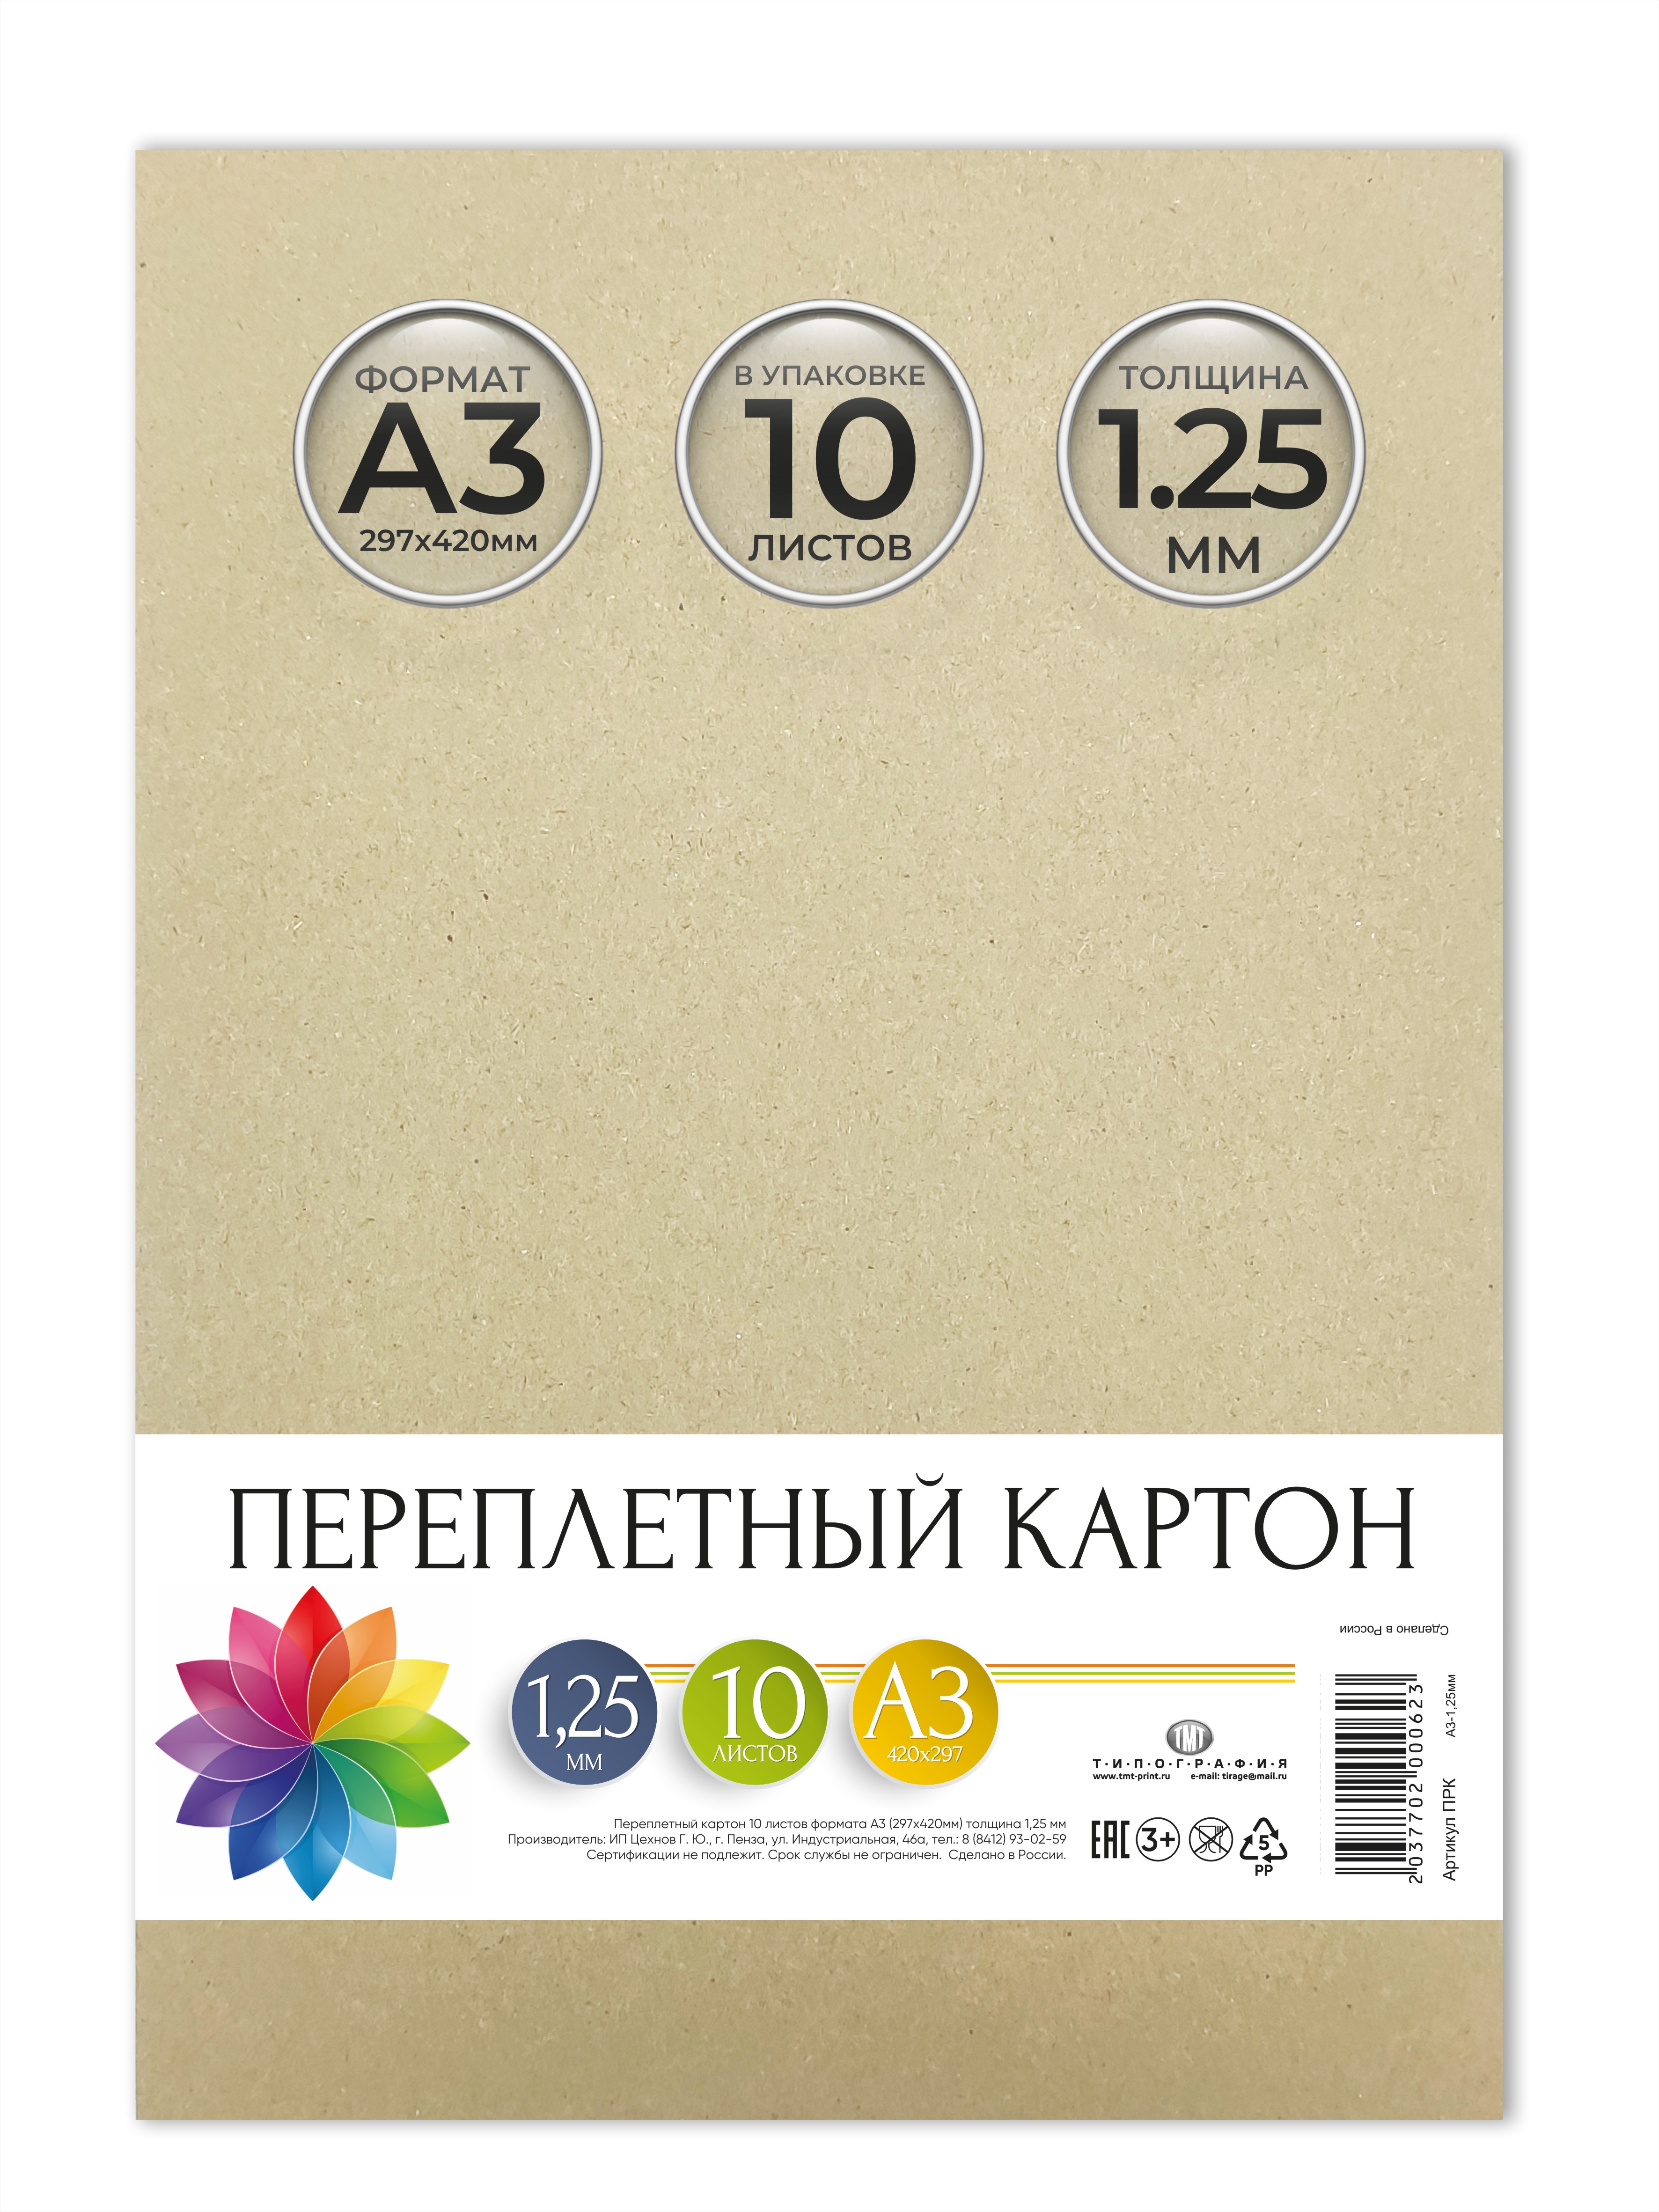 Картон переплетный Типография ТМТ, 10 листов, формат А3, толщина 1,25 мм.